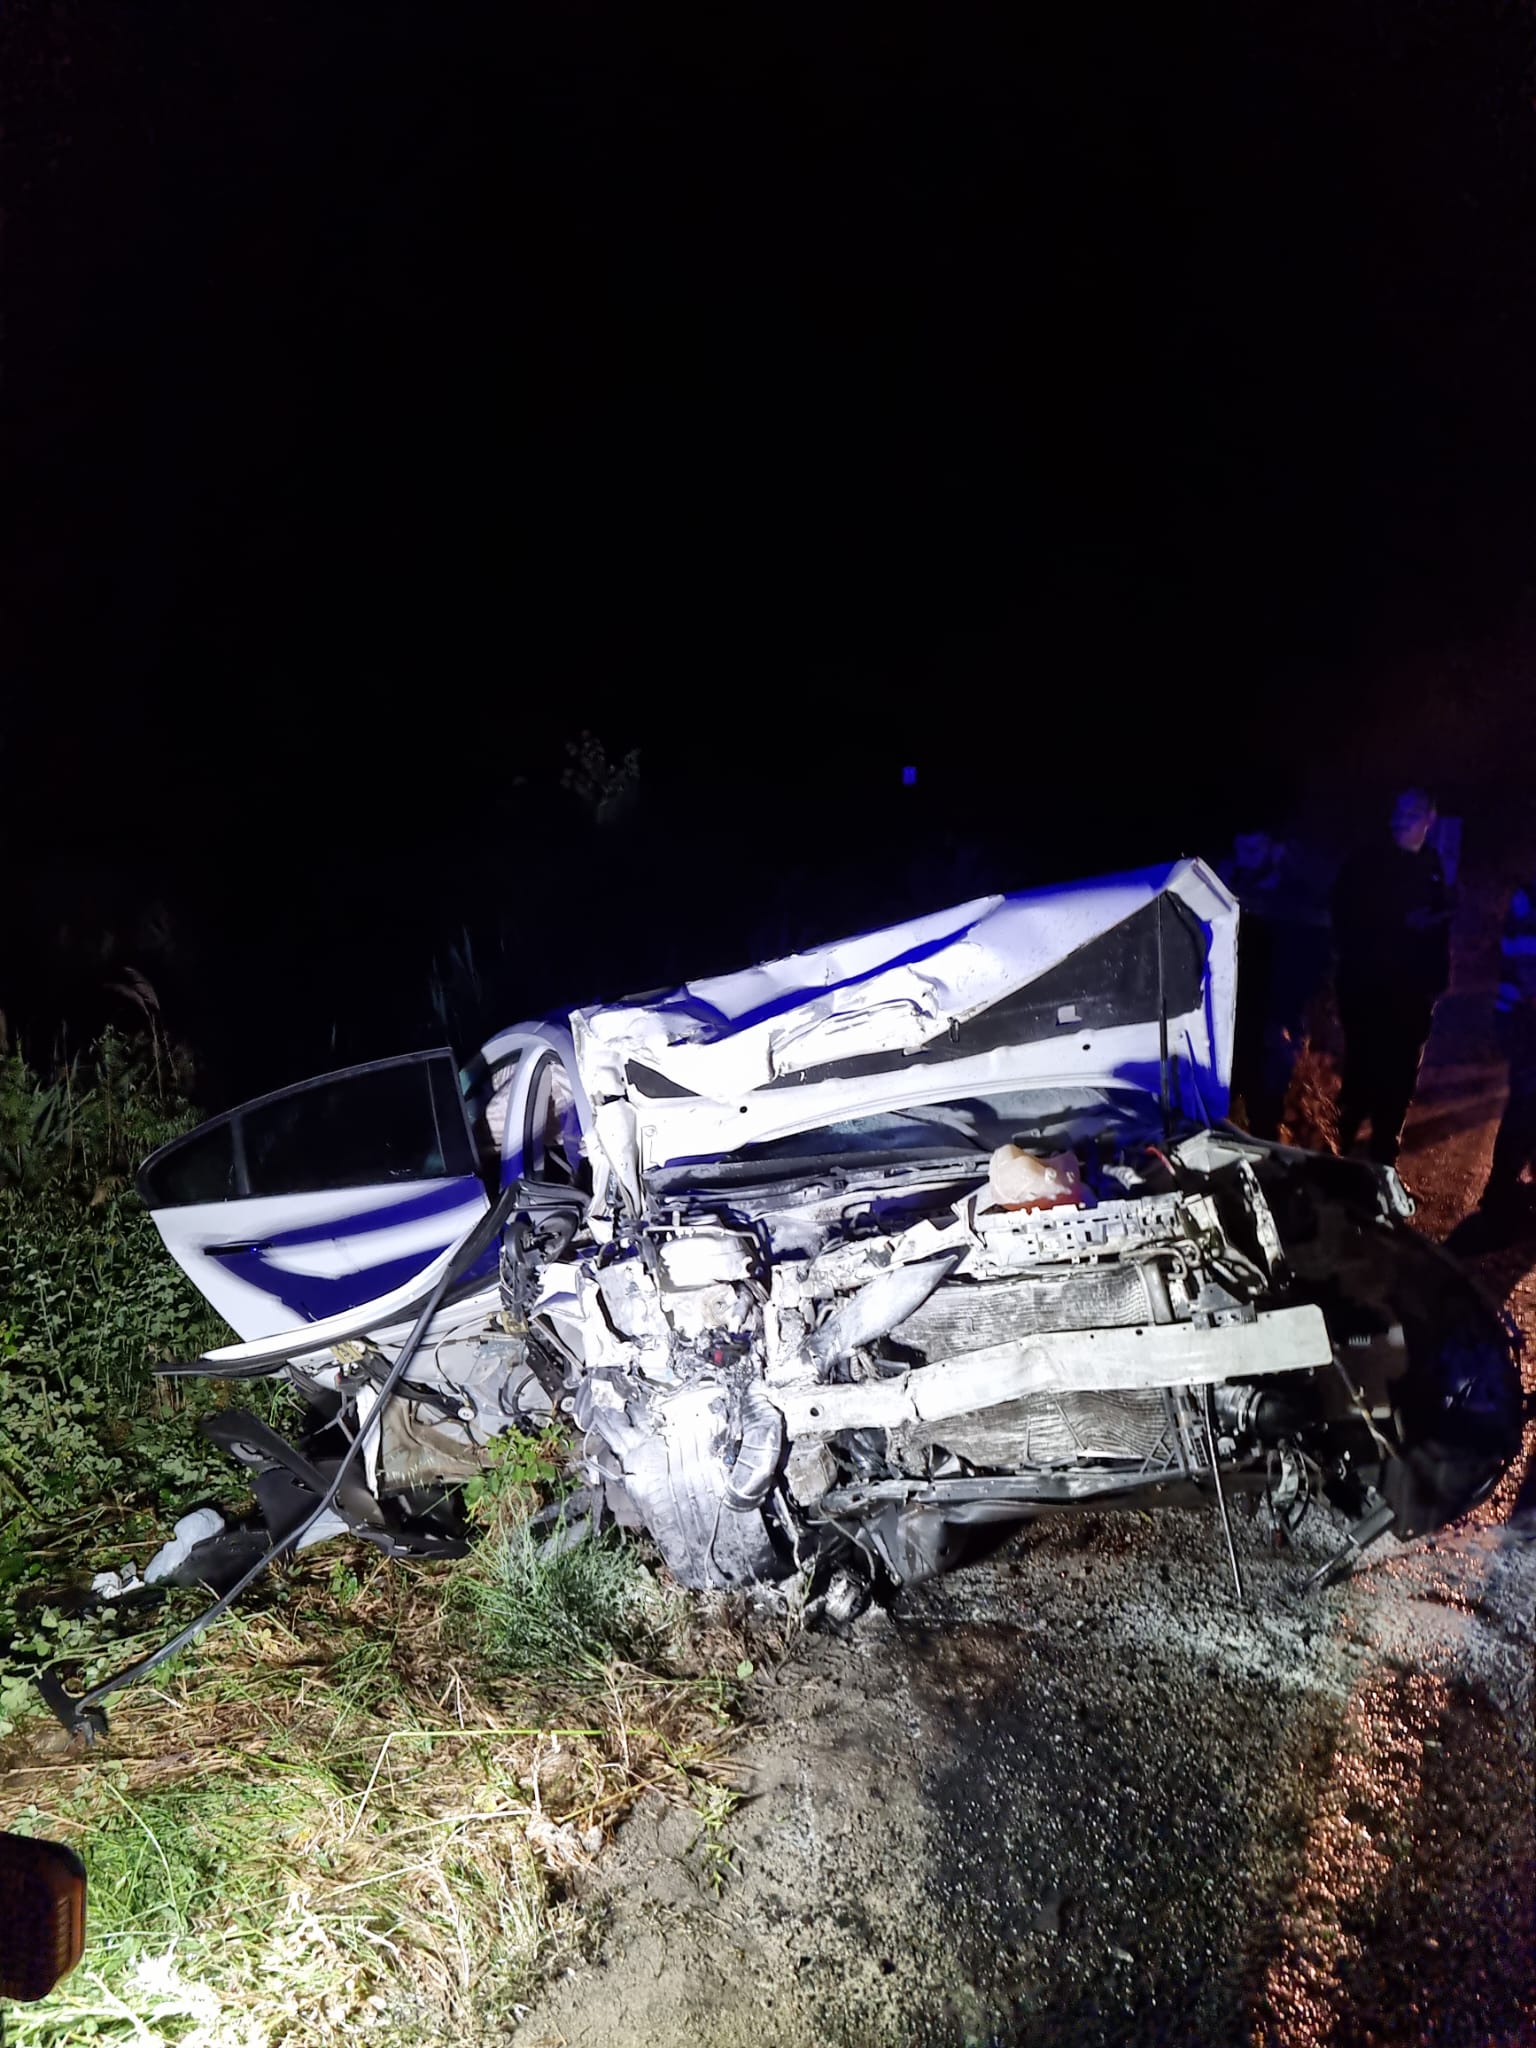 Aydın’da korkunç kaza: 2 ölü, 5 yaralı